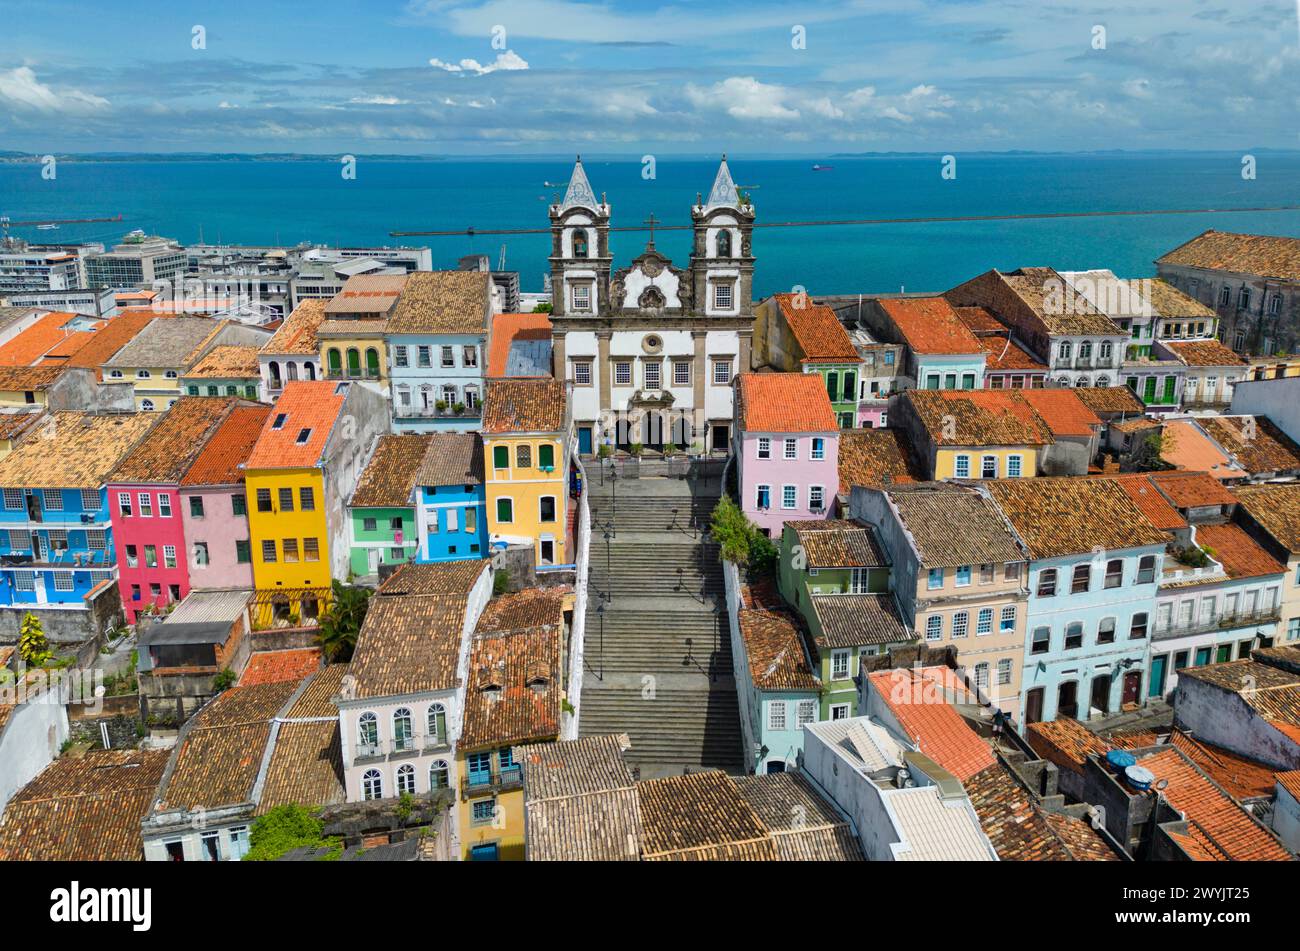 Brazil, state of Bahia, Salvador, historical center listed as World Heritage by UNESCO, Pelourinho district, Santissimo Sacramento do Passo church (aerial view) Stock Photo